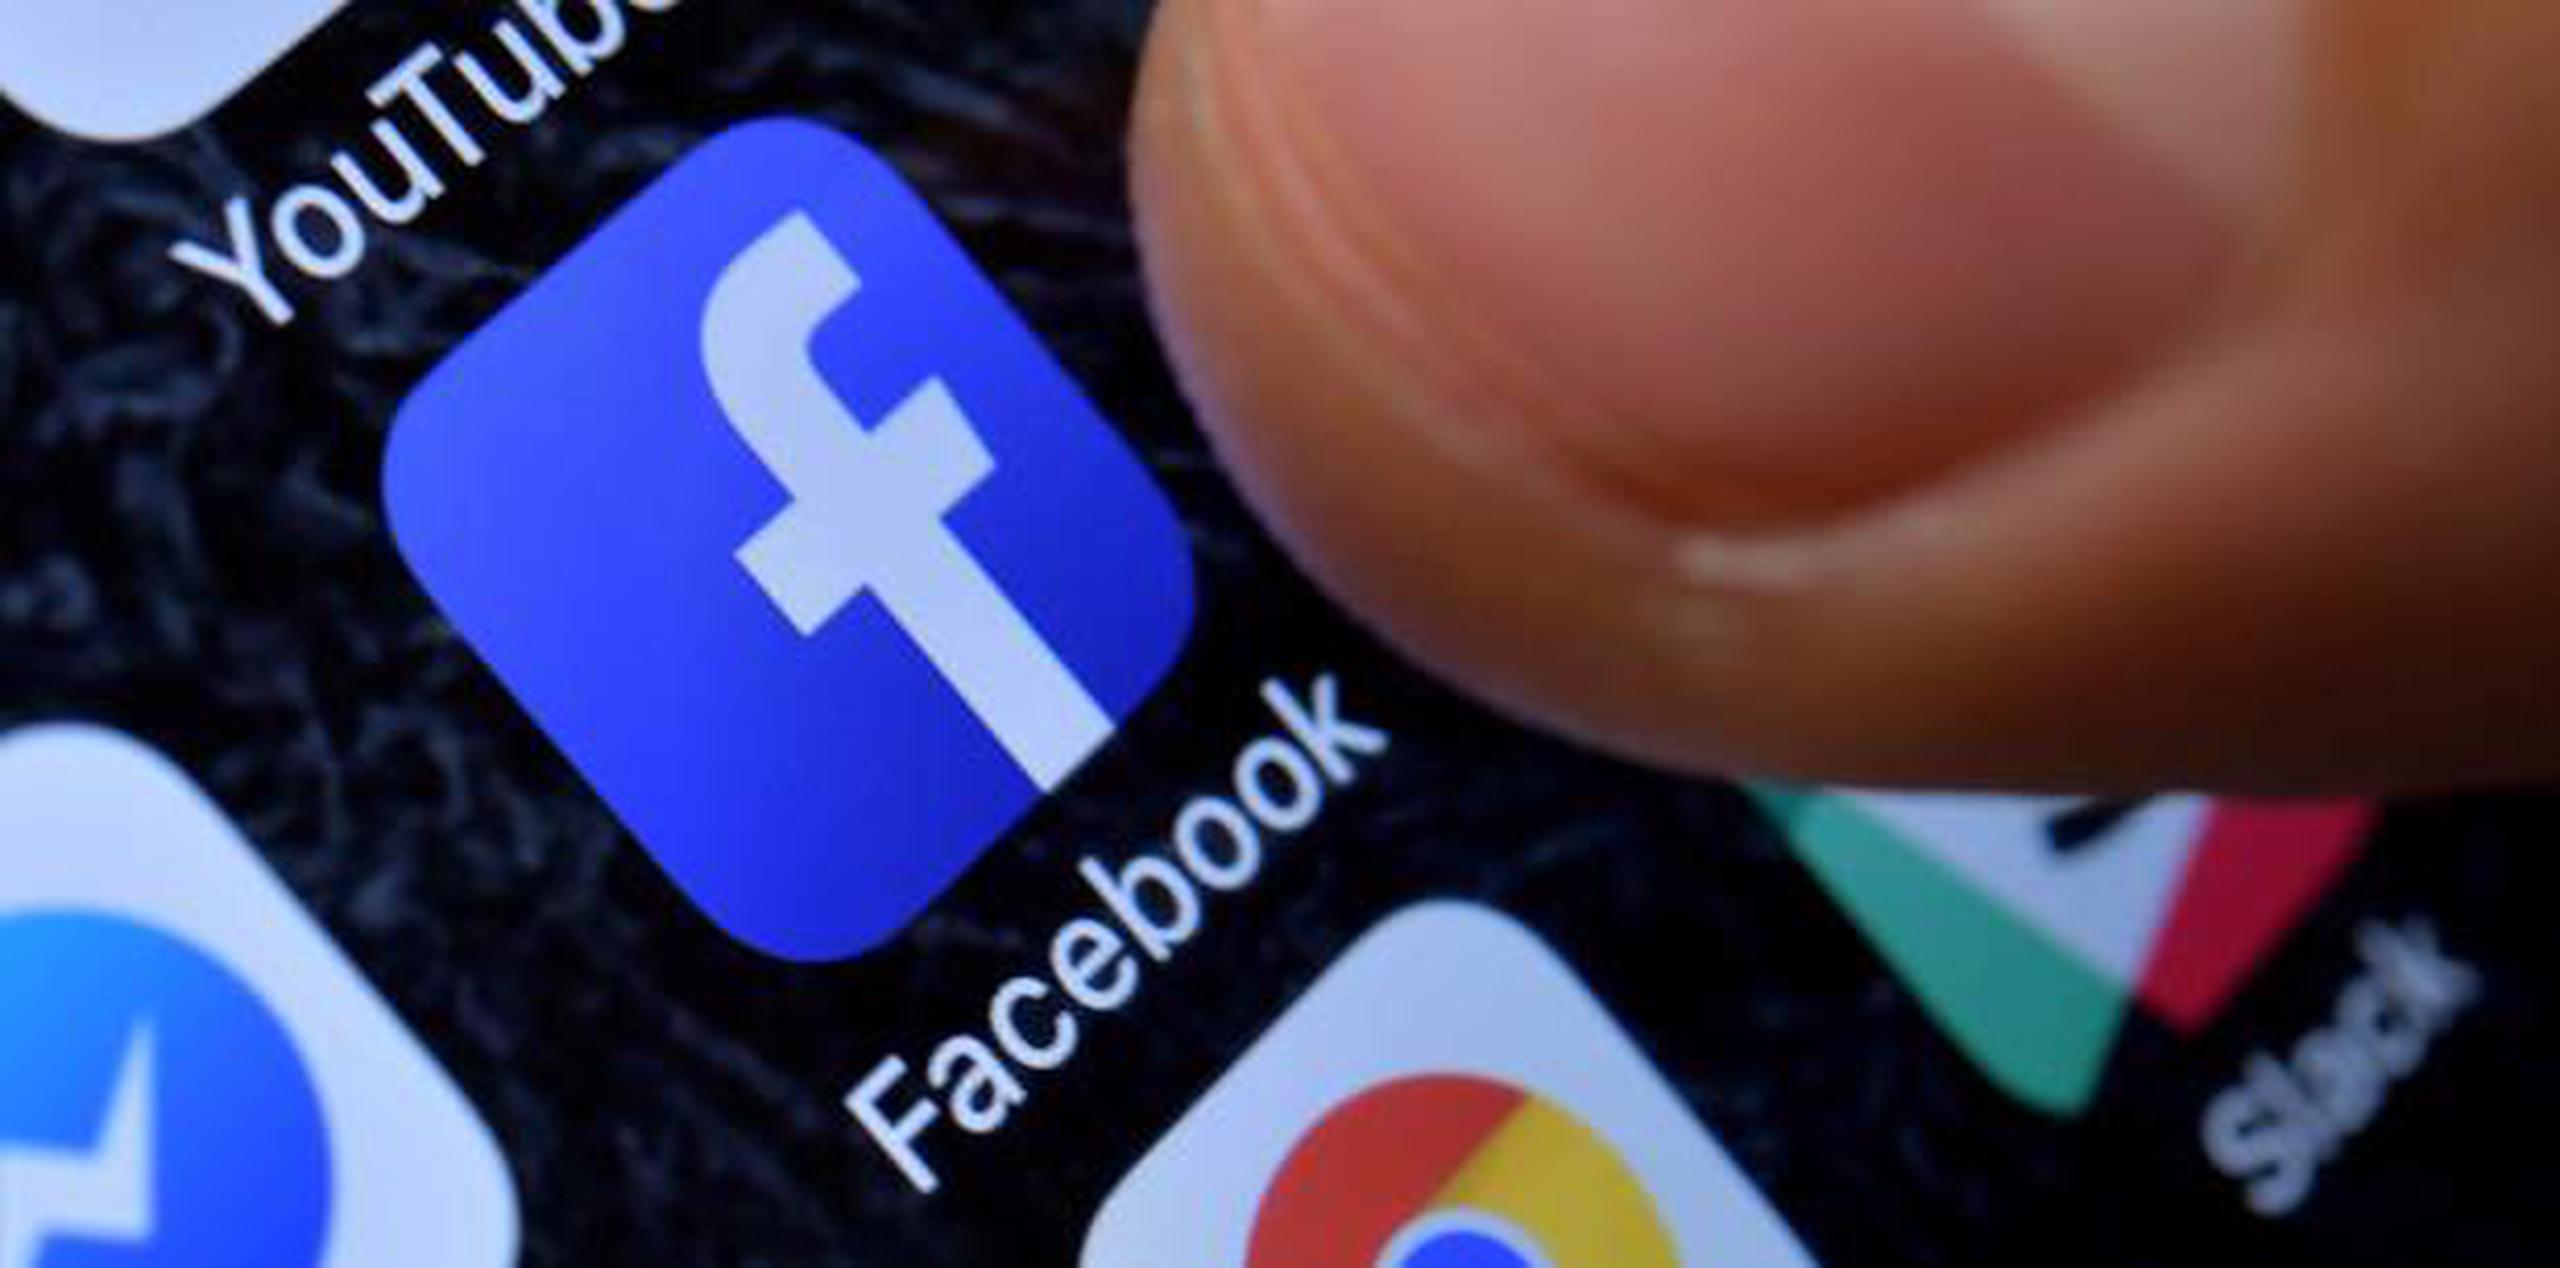 Facebook dijo que notificará a los usuarios de la app que se hizo mal uso de sus datos. (EFE / Sascha Steinbach)